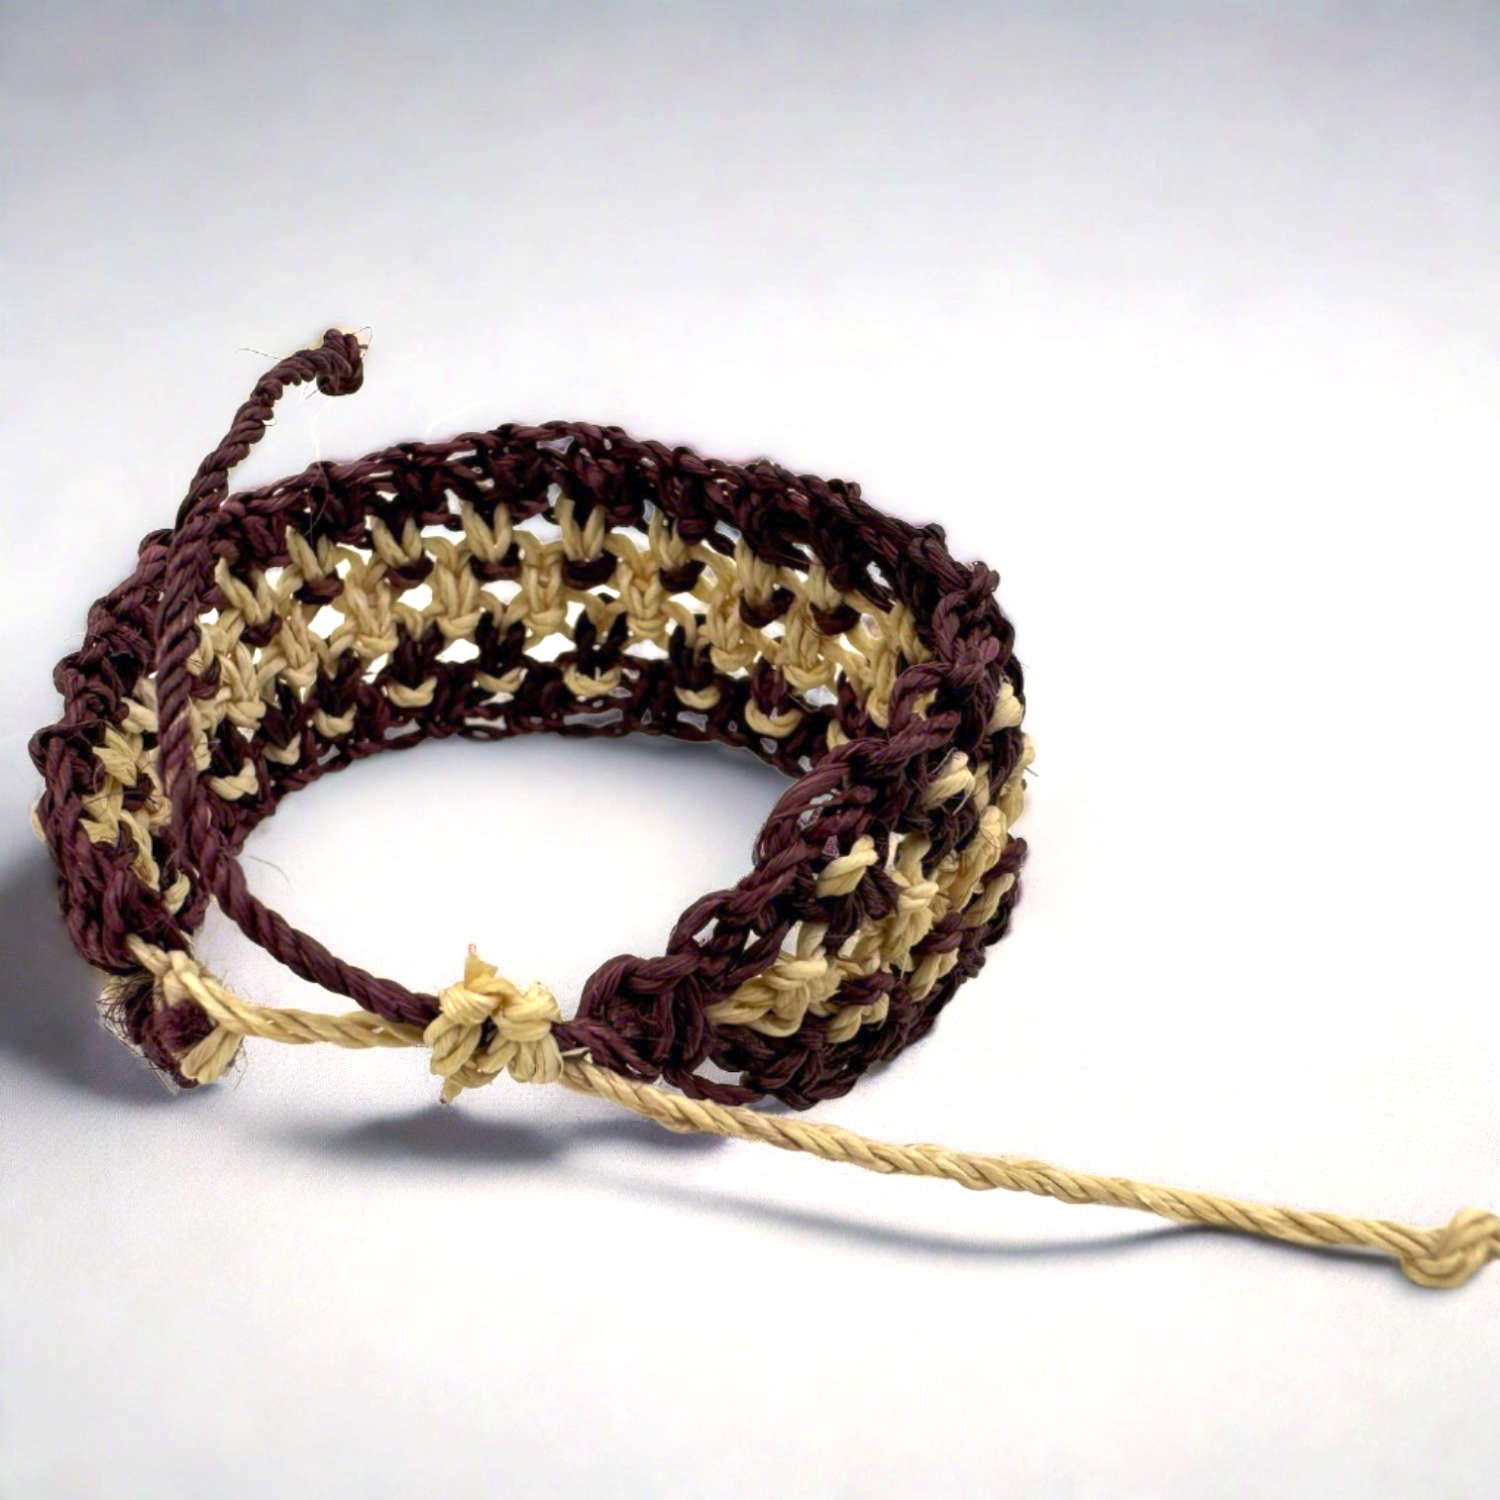 Chambira Amazon Jungle Essence Bracelet Set handmade by Huaorani (5 Pieces)